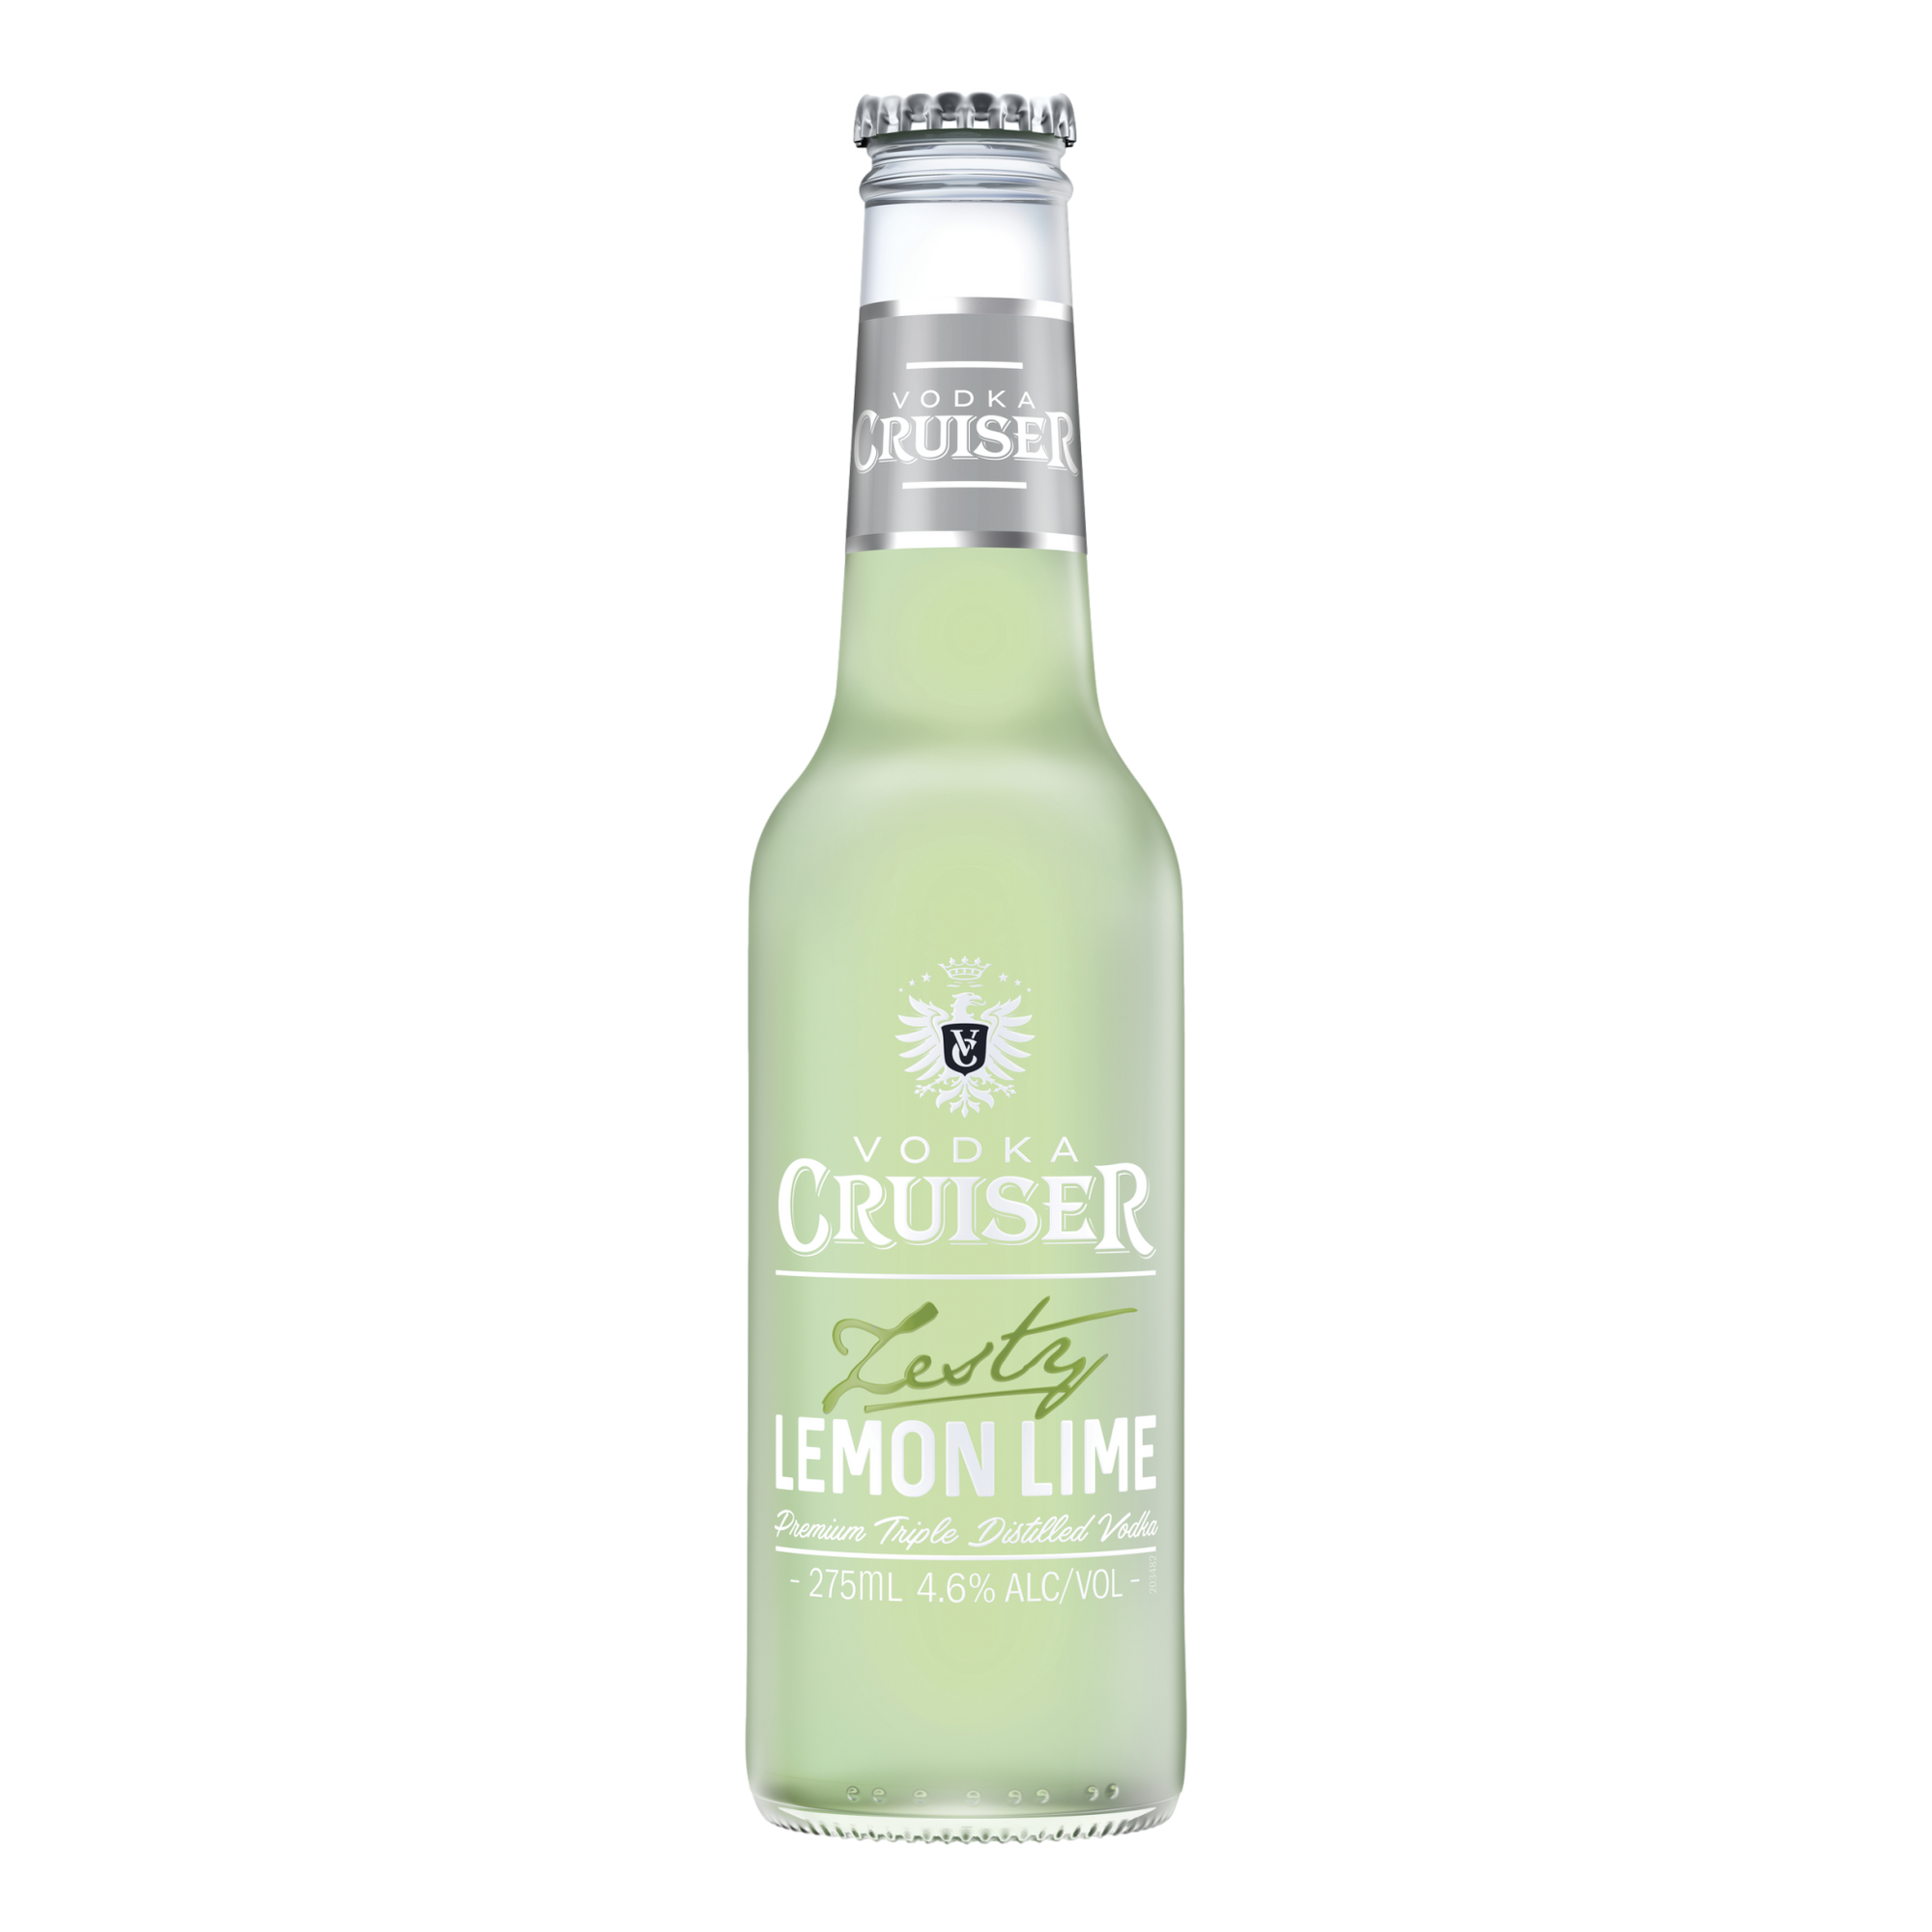 Vodka Cruiser Zesty Lemon Lime 275ml Bottle Single